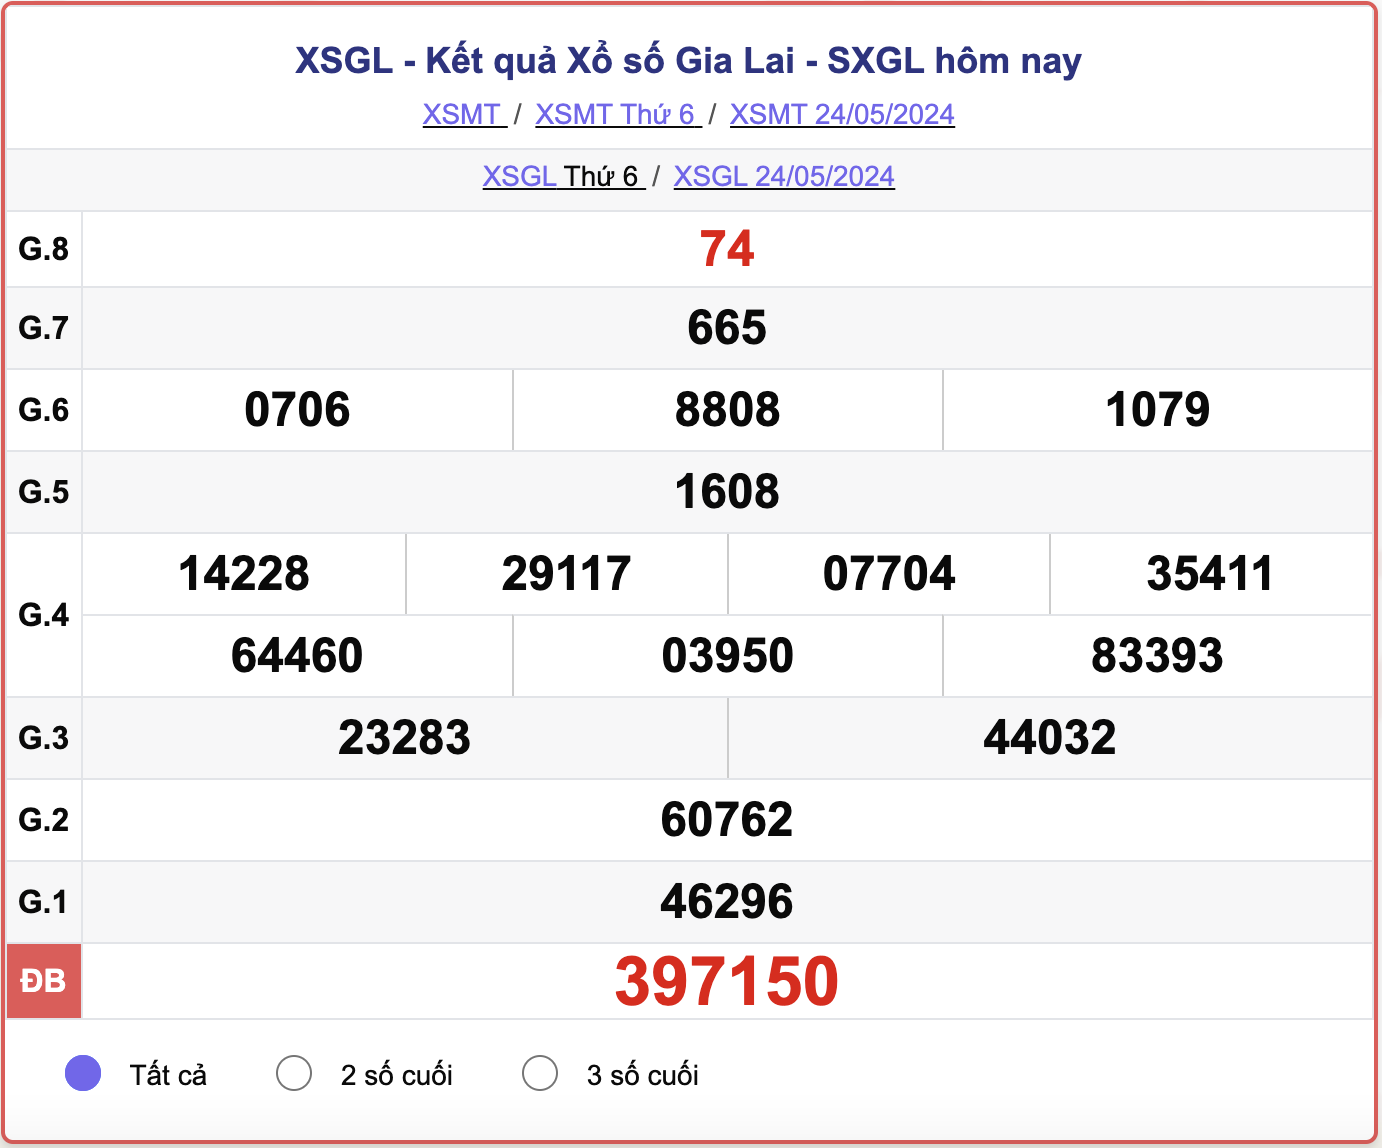 XSGL 24/5, kết quả xổ số Gia Lai hôm nay 24/5/2024.